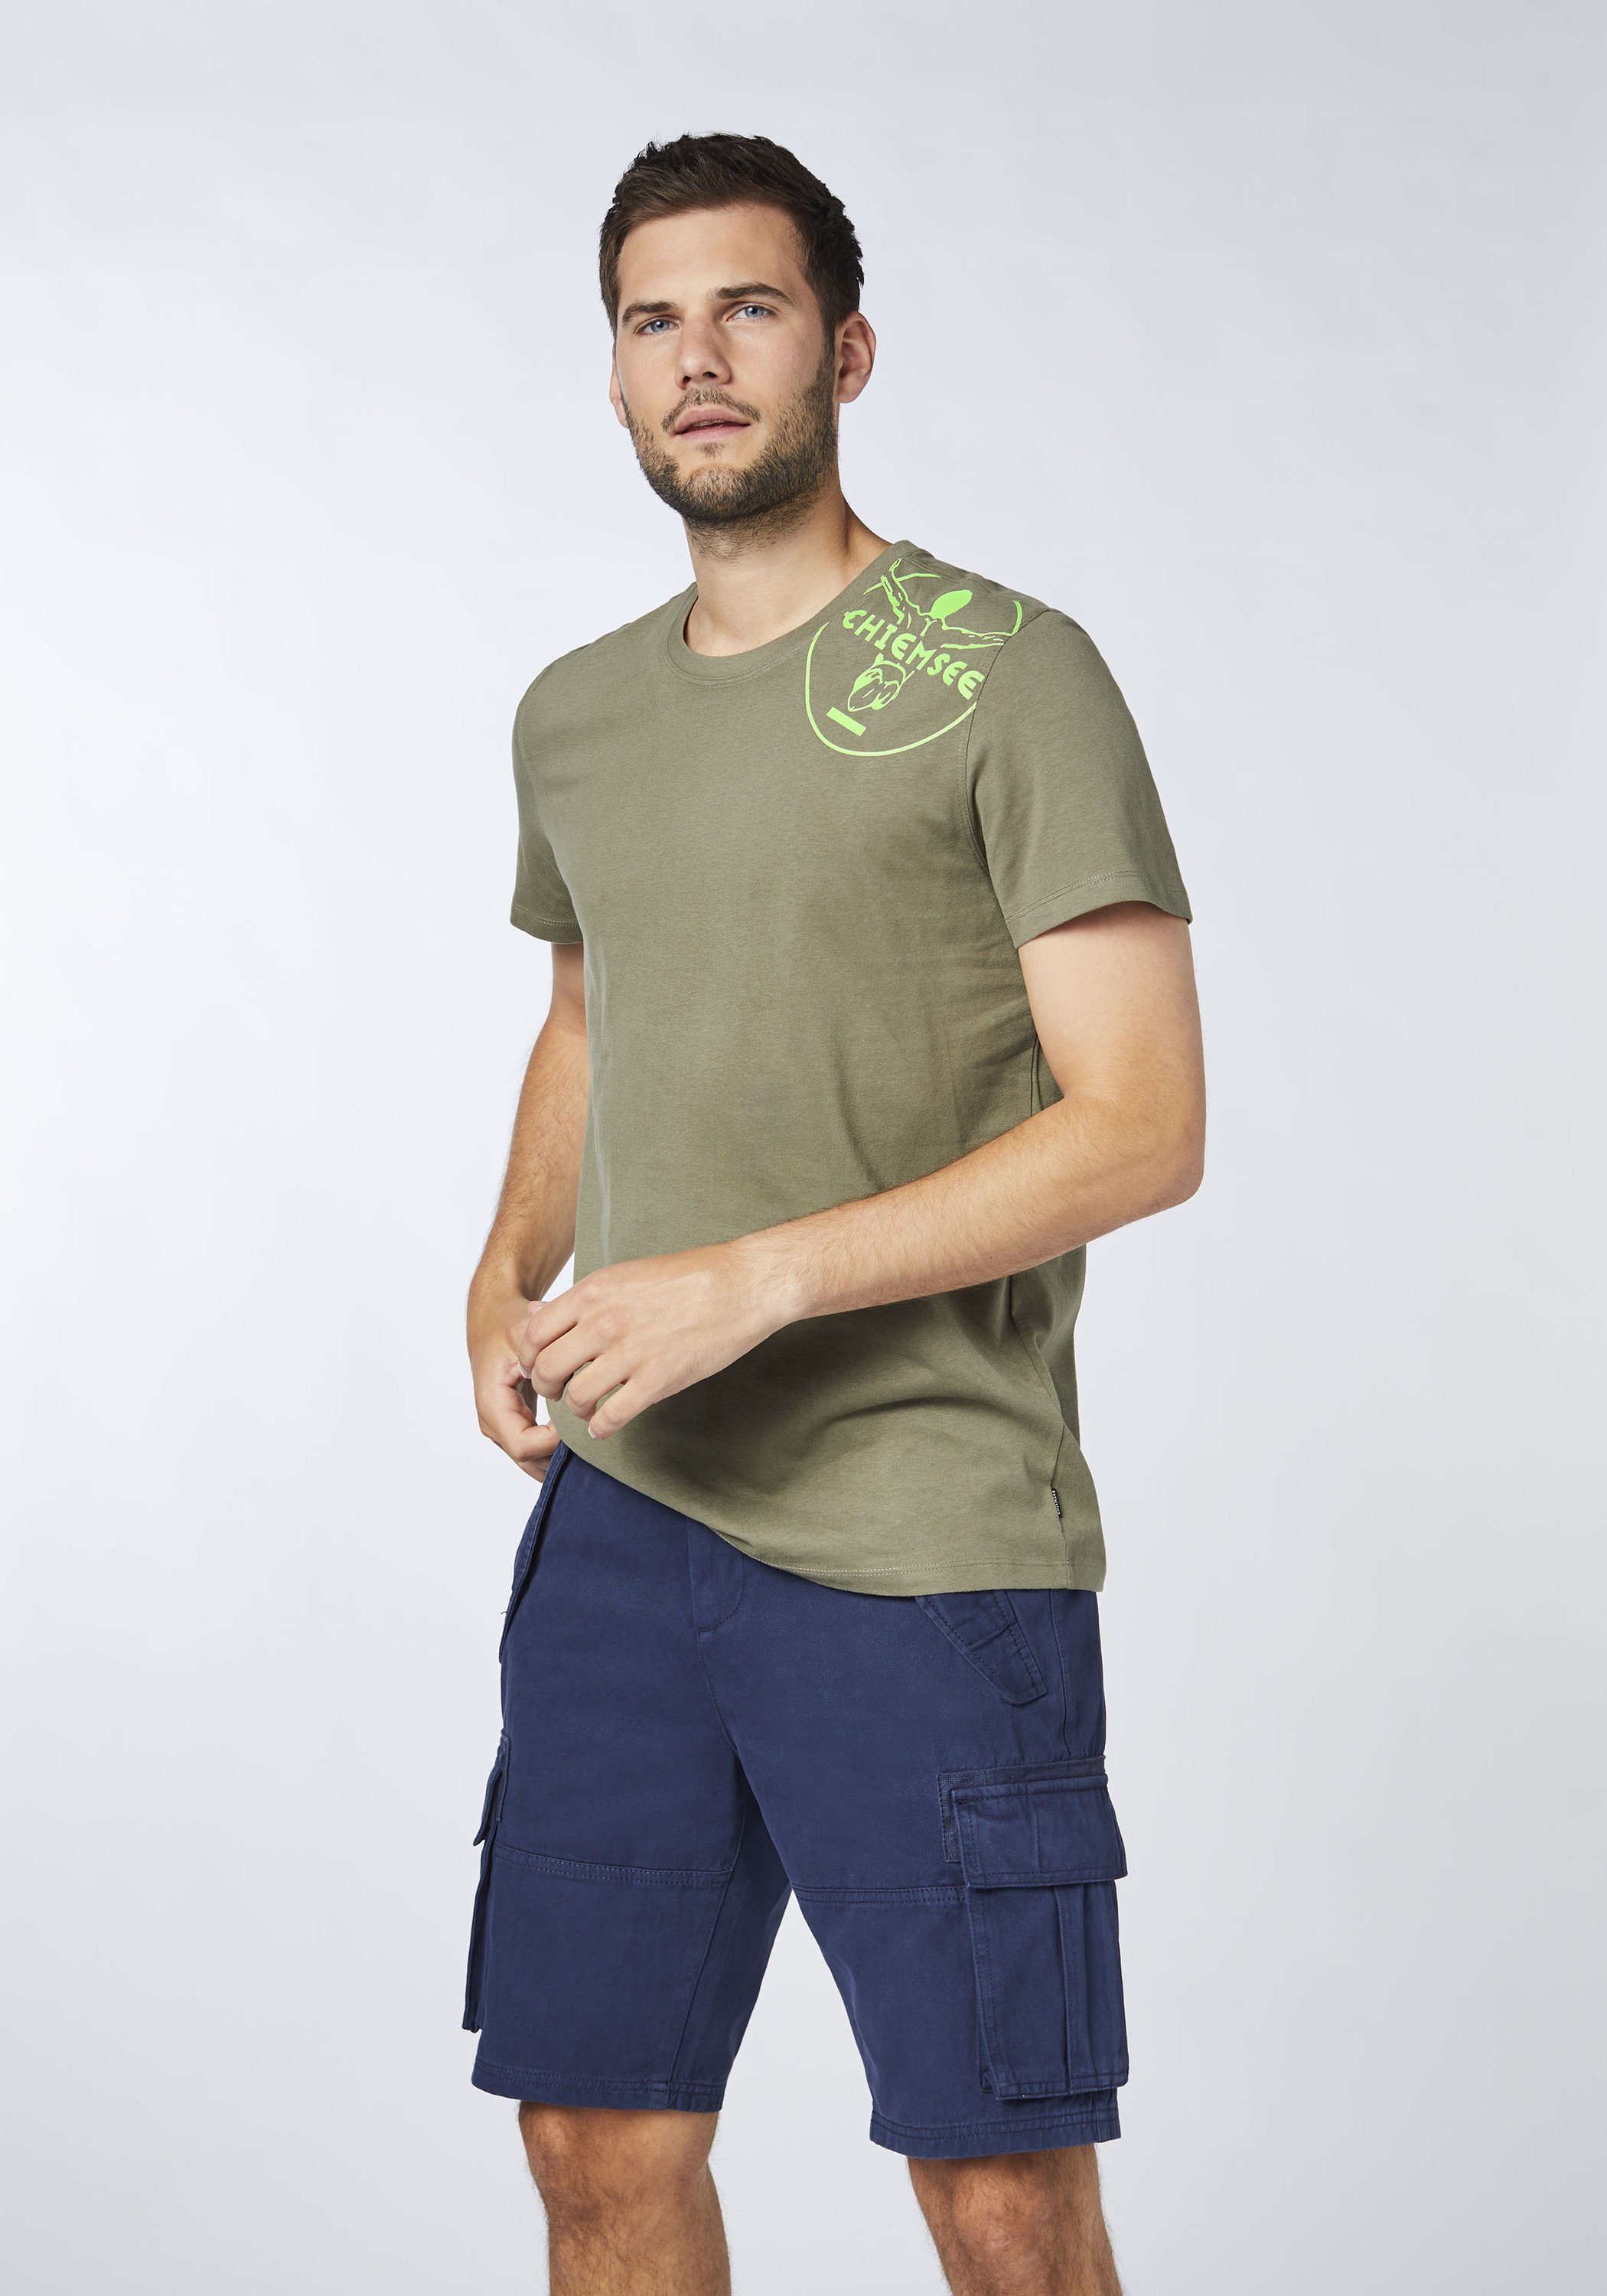 T-Shirt Olive Dusty 1 Print-Shirt mit Chiemsee Jumper-Motiv